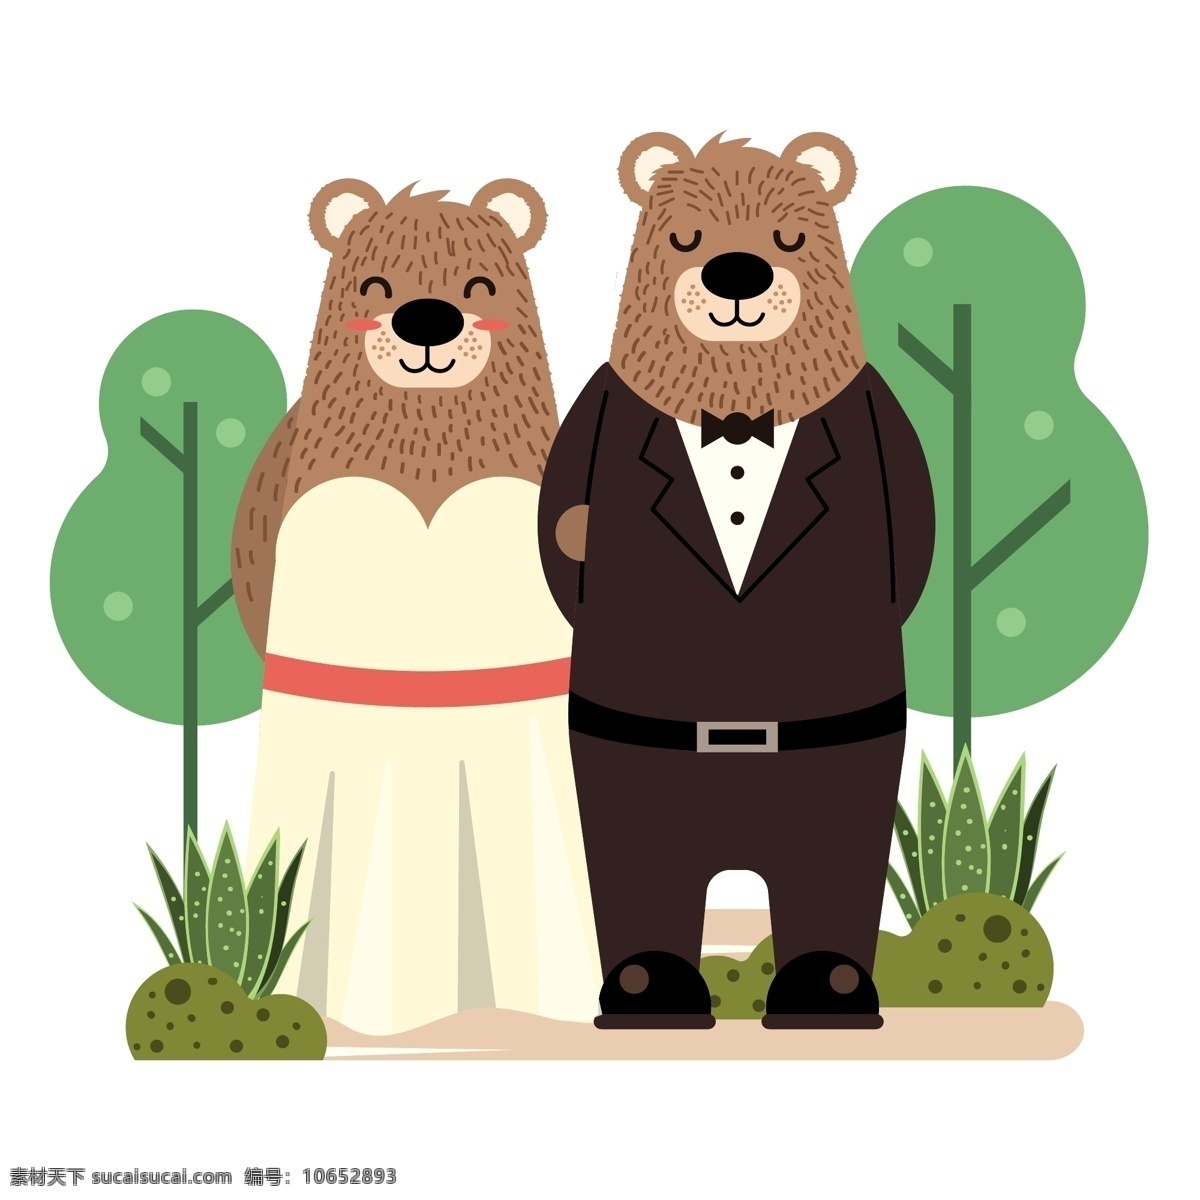 节日元素 情侣 情人 情人节 矢量素材 手绘 手绘插画 小熊 可爱 小 熊